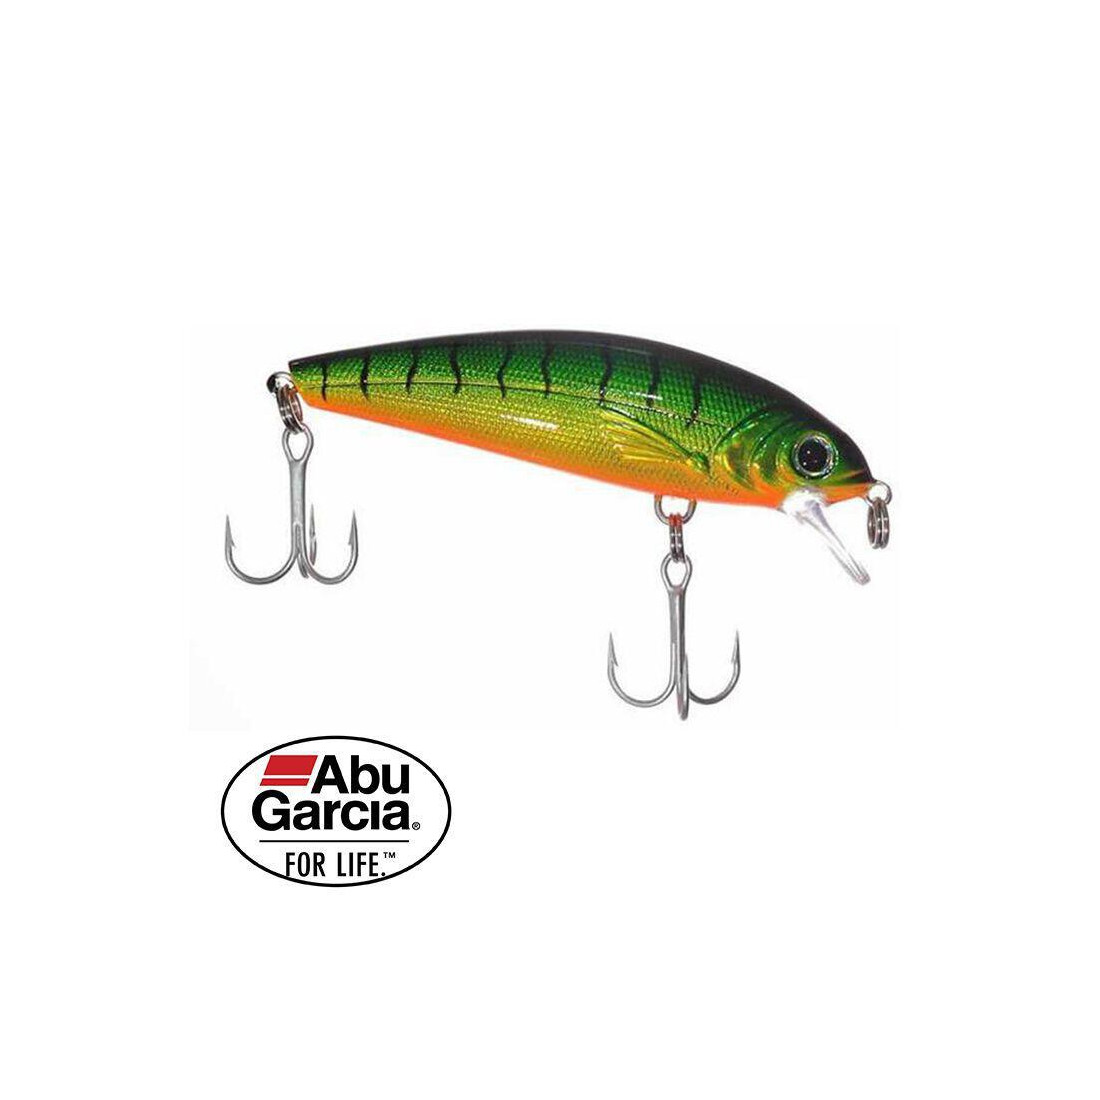 Abu Garcia Abu Garcia Tormentor Lure Floating 1248328 36282924956 Green Orange 110mm/20g 